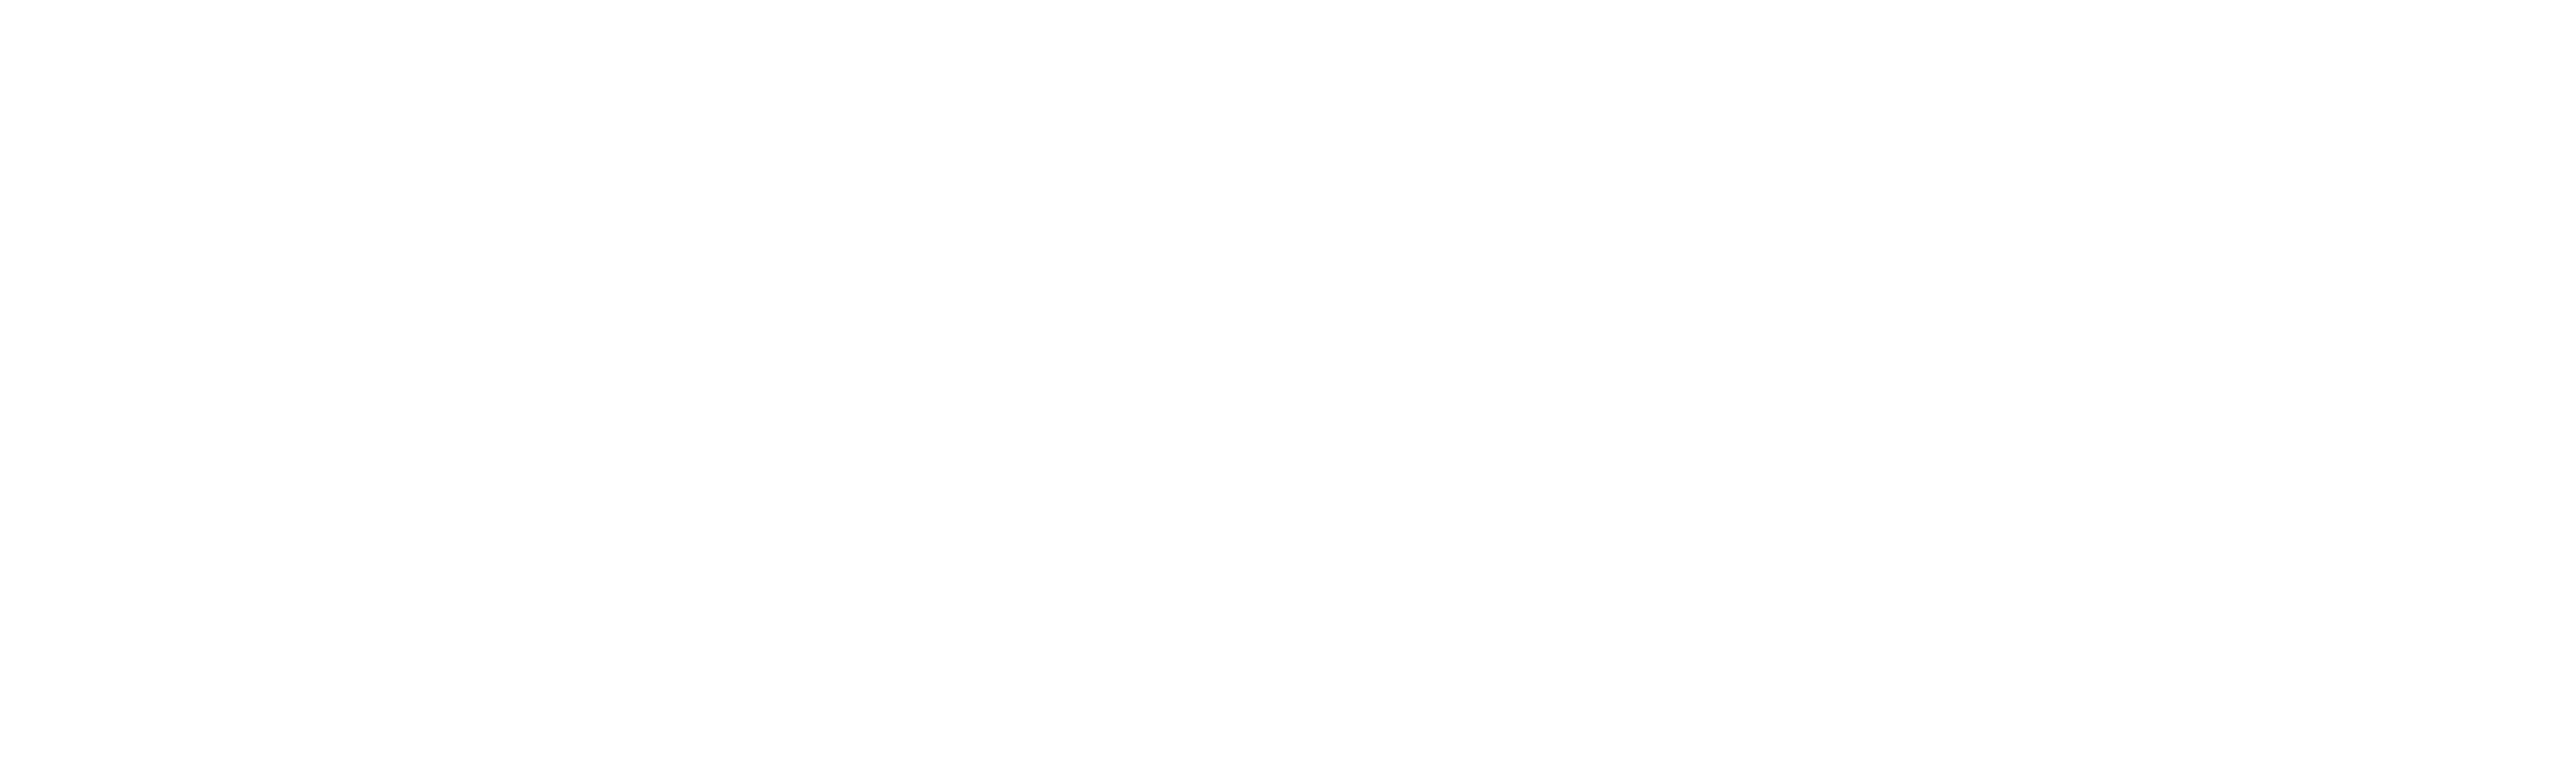 Festival De Cine De Sant Joan - Festival De Cine De Sant Joan D Alacant Clipart (8268x2742), Png Download